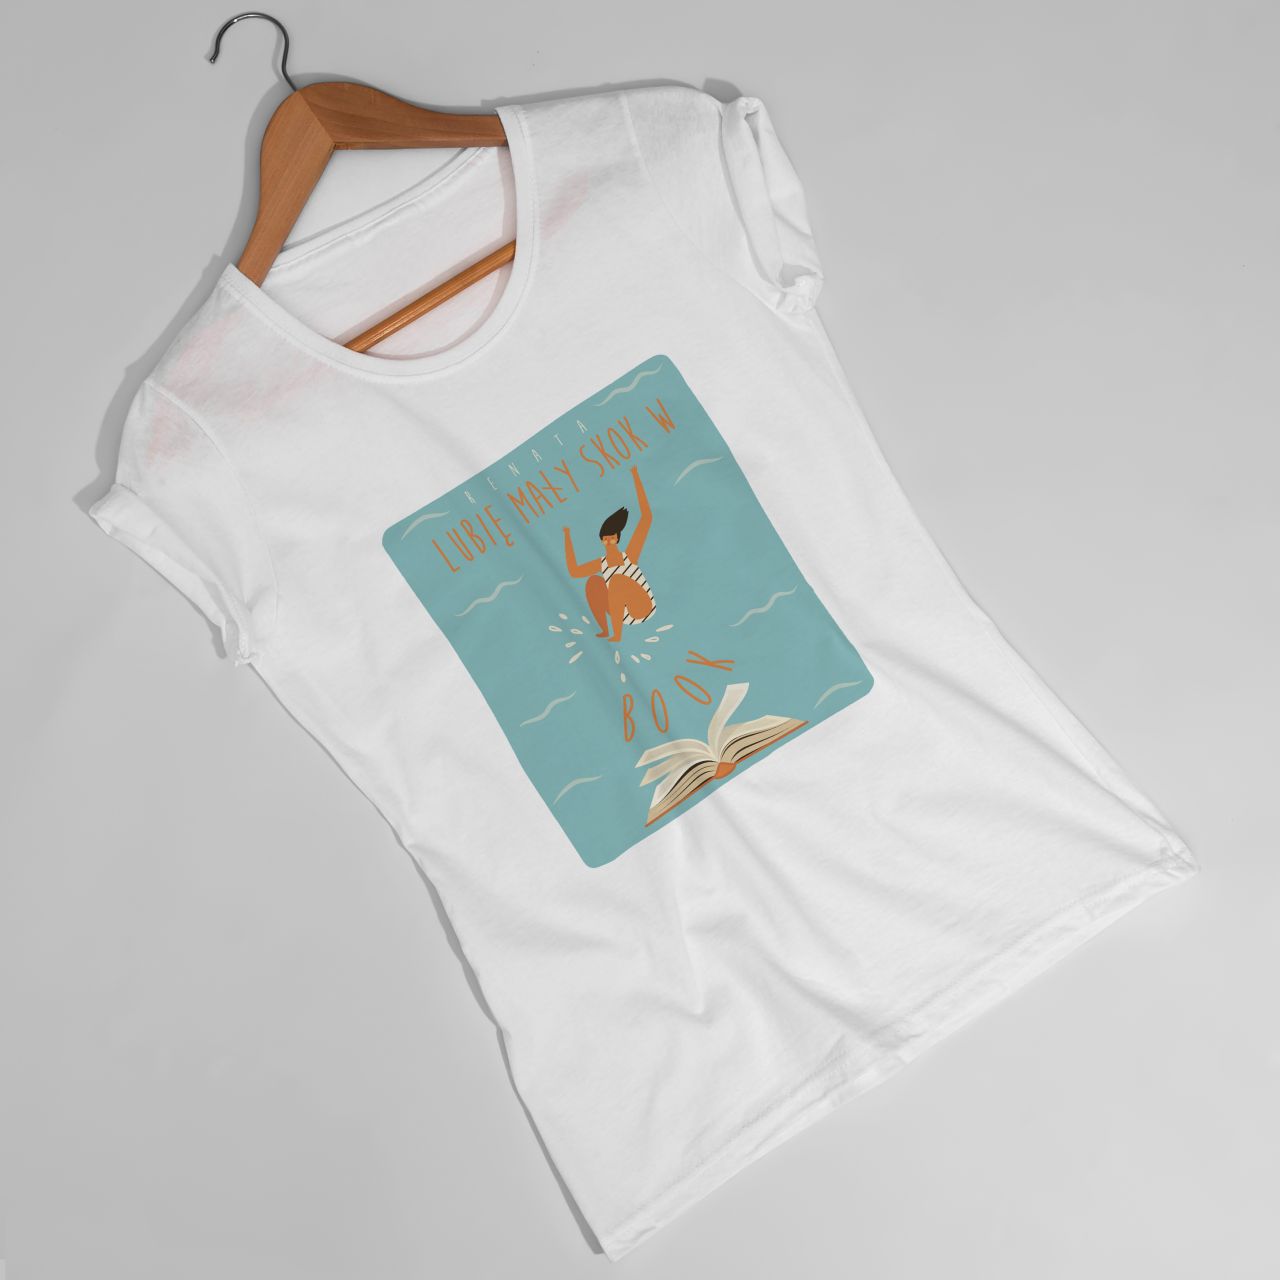 Koszulka damska z nadrukiem SKOK W BOOK prezent dla mola książkowego - S